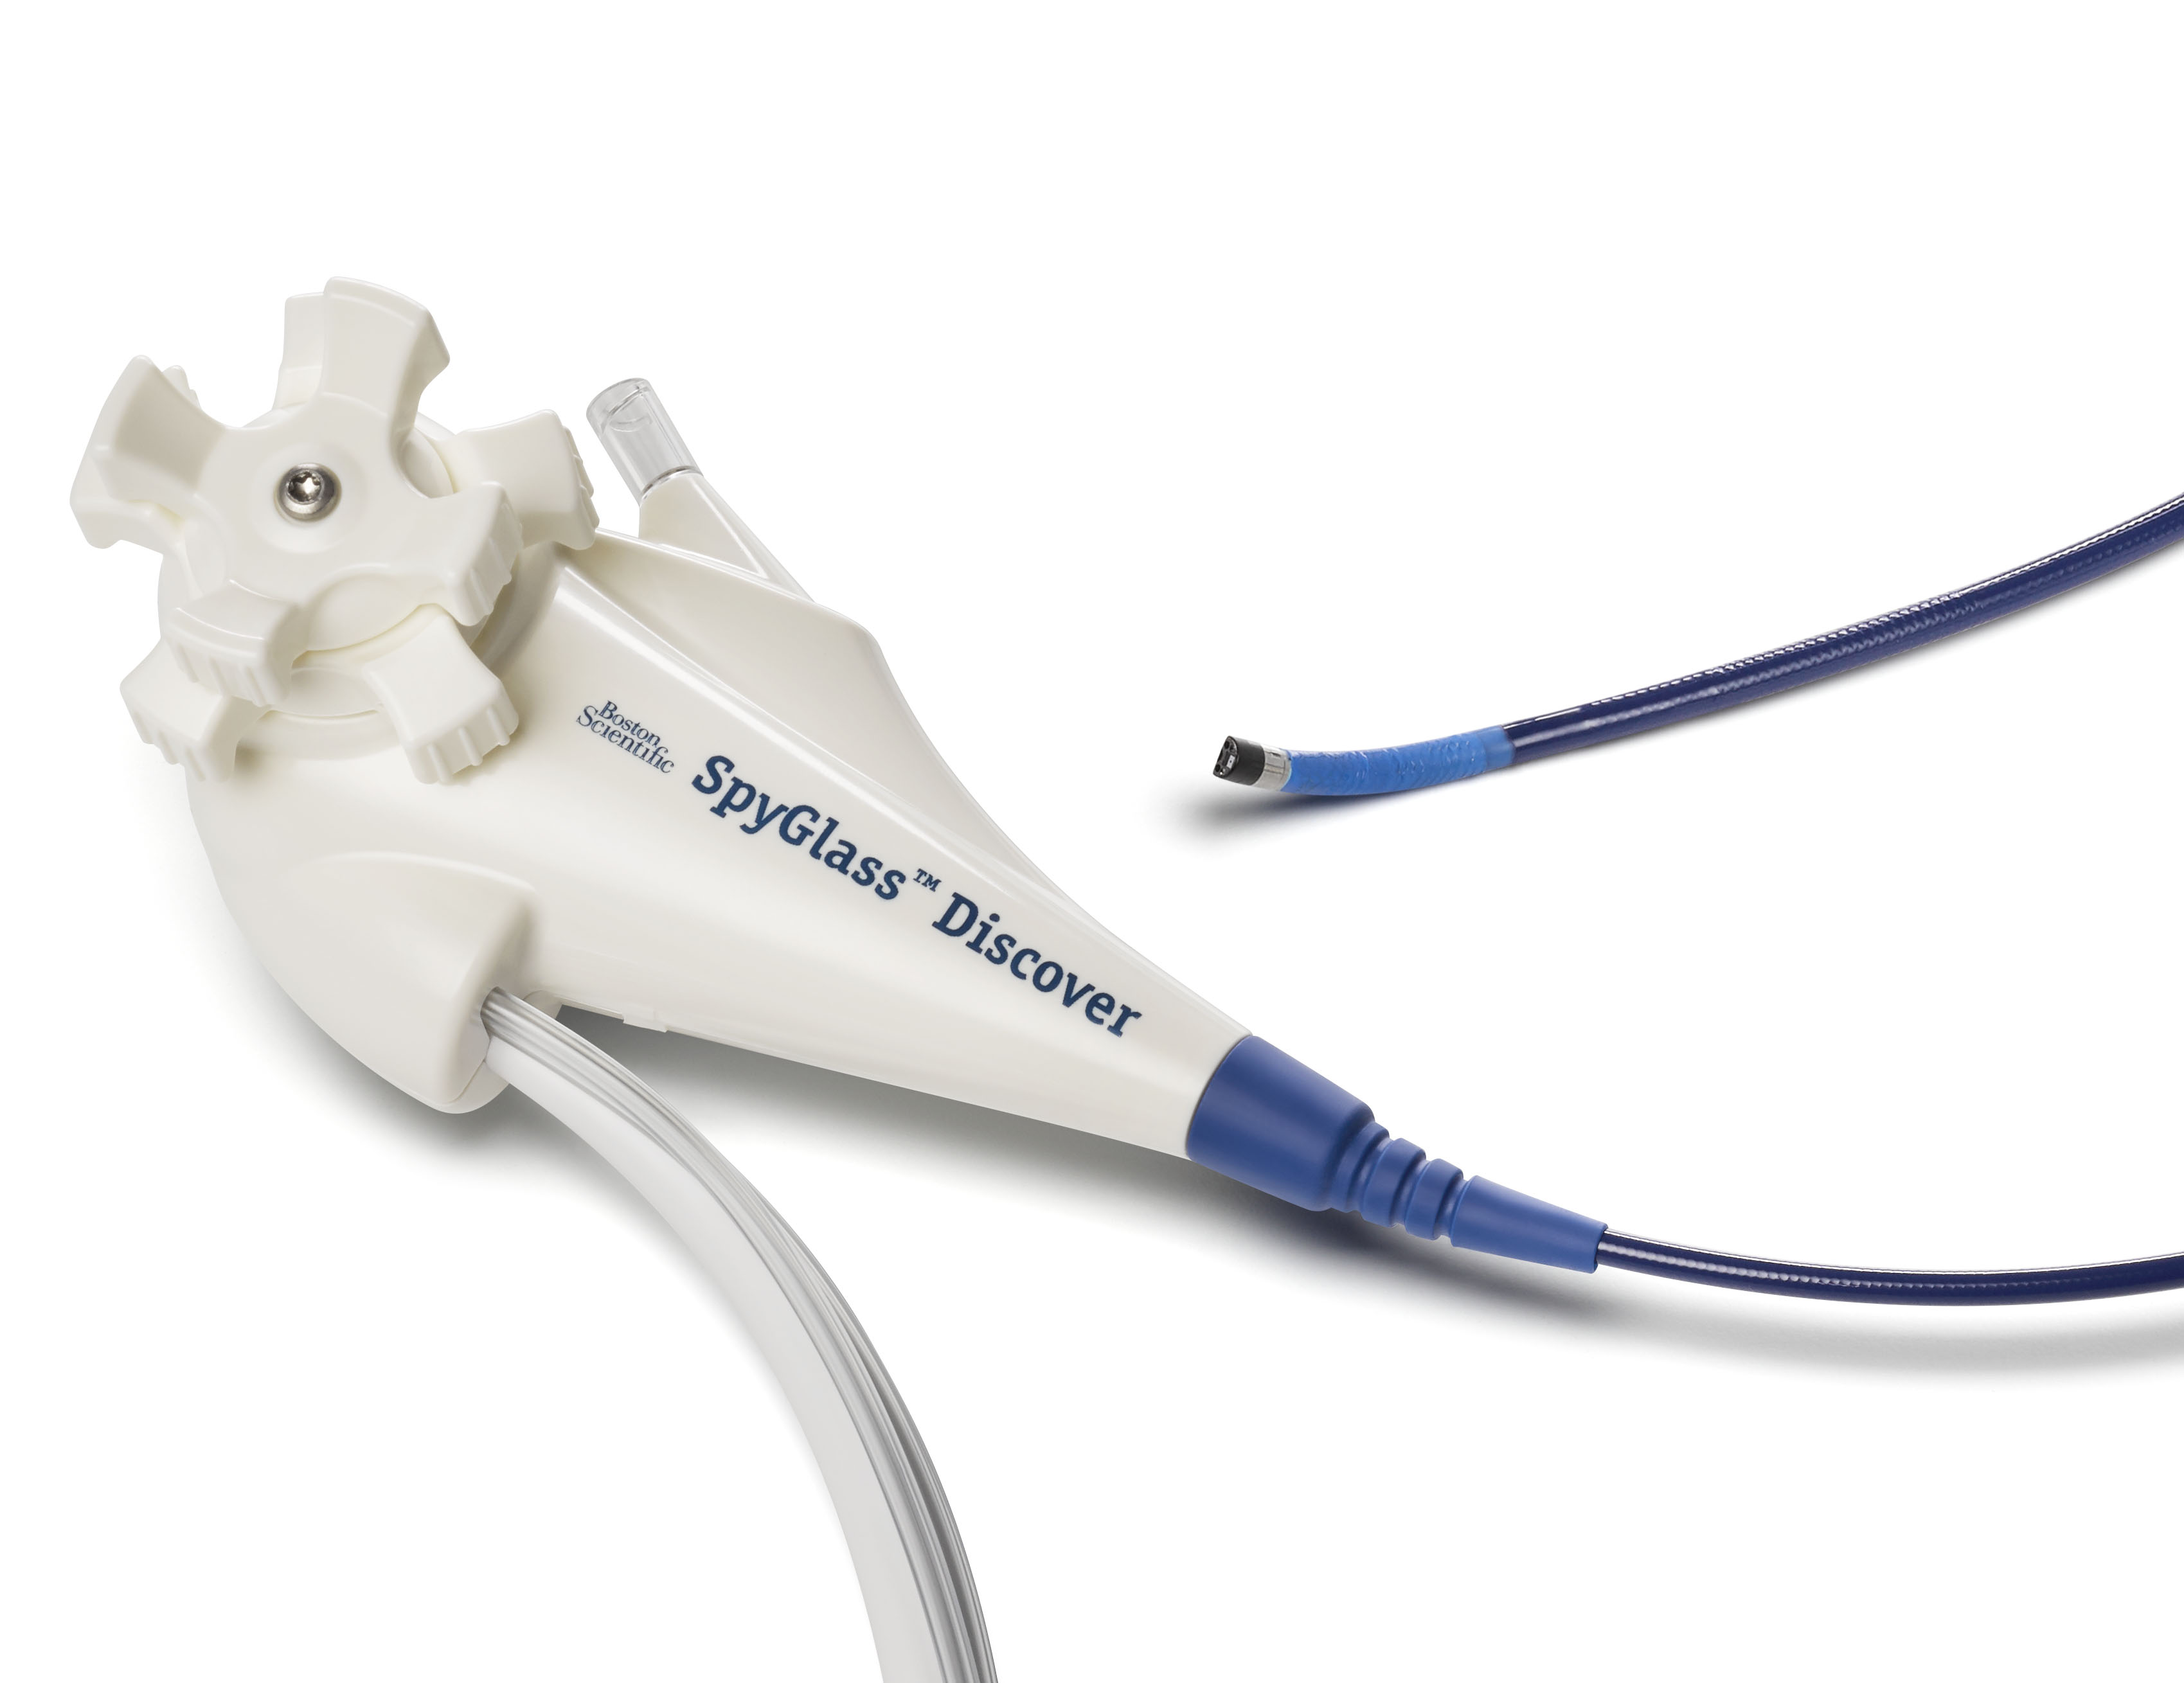 SpyGlass Discover Digital Catheter